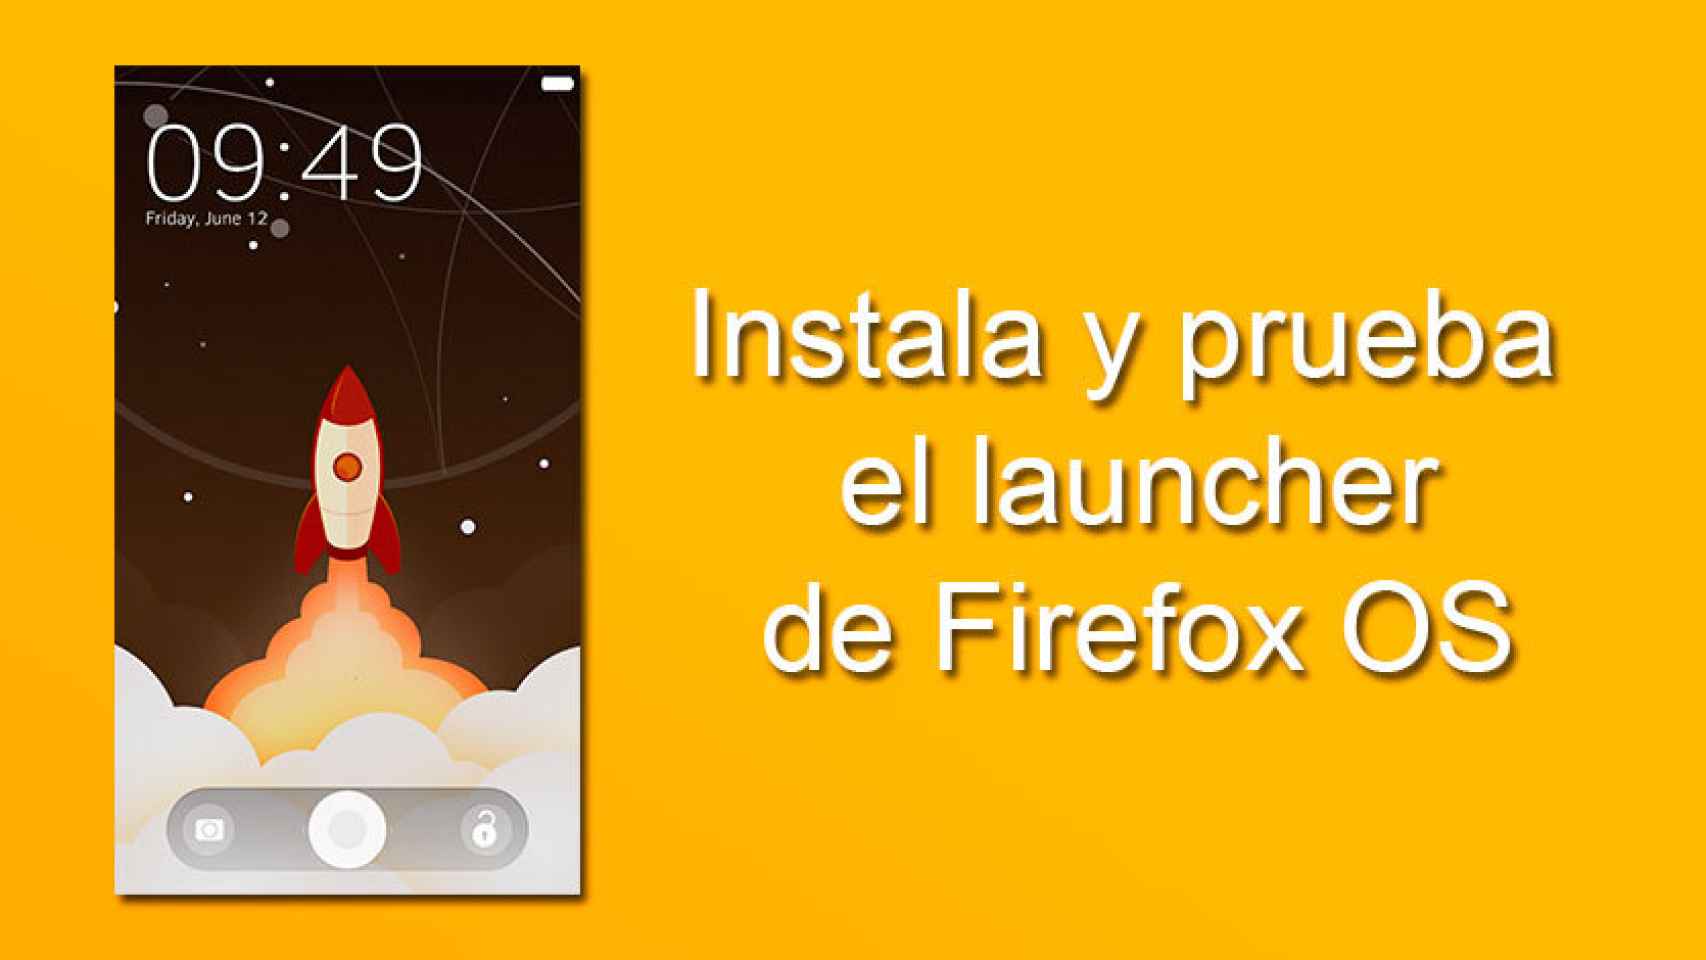 Instala y prueba Firefox OS en tu Android